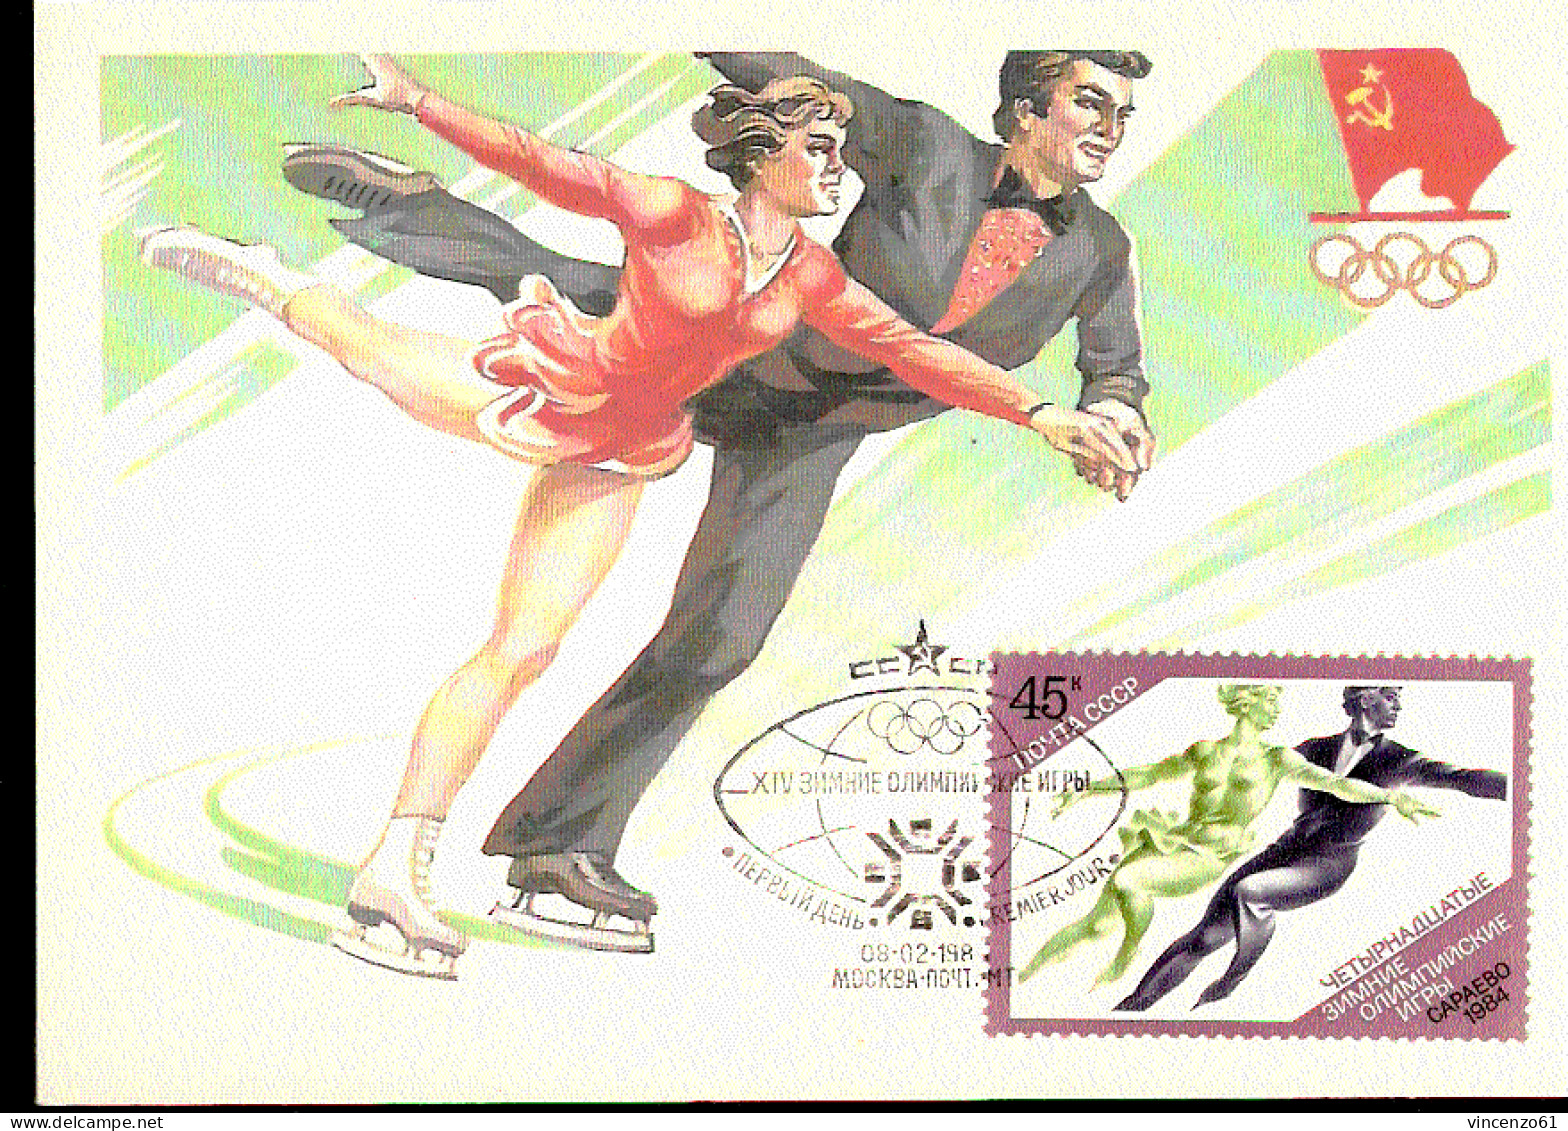 PATTINAGGIO ARTISTICO - OLIMPIADI INVERNALI 1984 CON ANNULLO SPECIALE URSS - Figure Skating